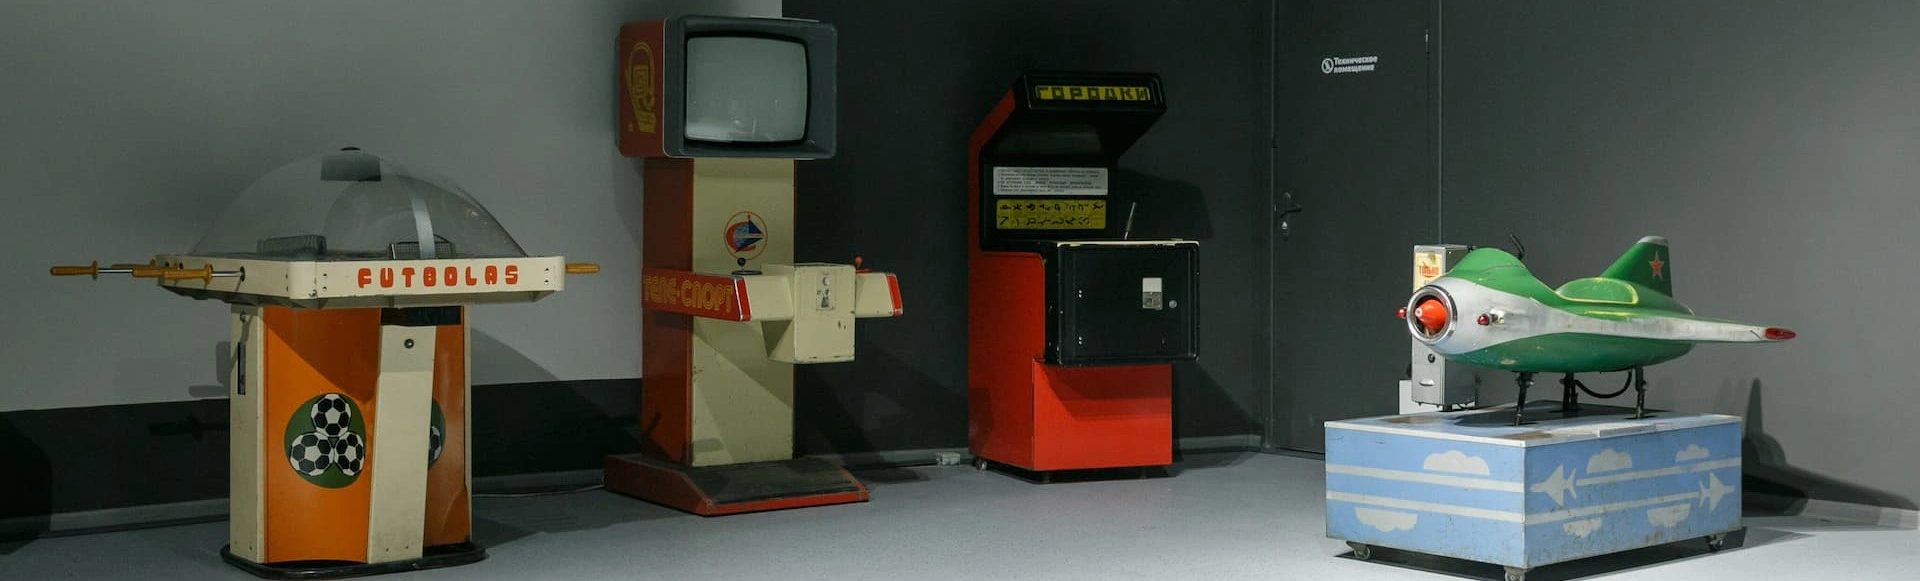 Посещение Музея советских игровых автоматов на ВДНХ
